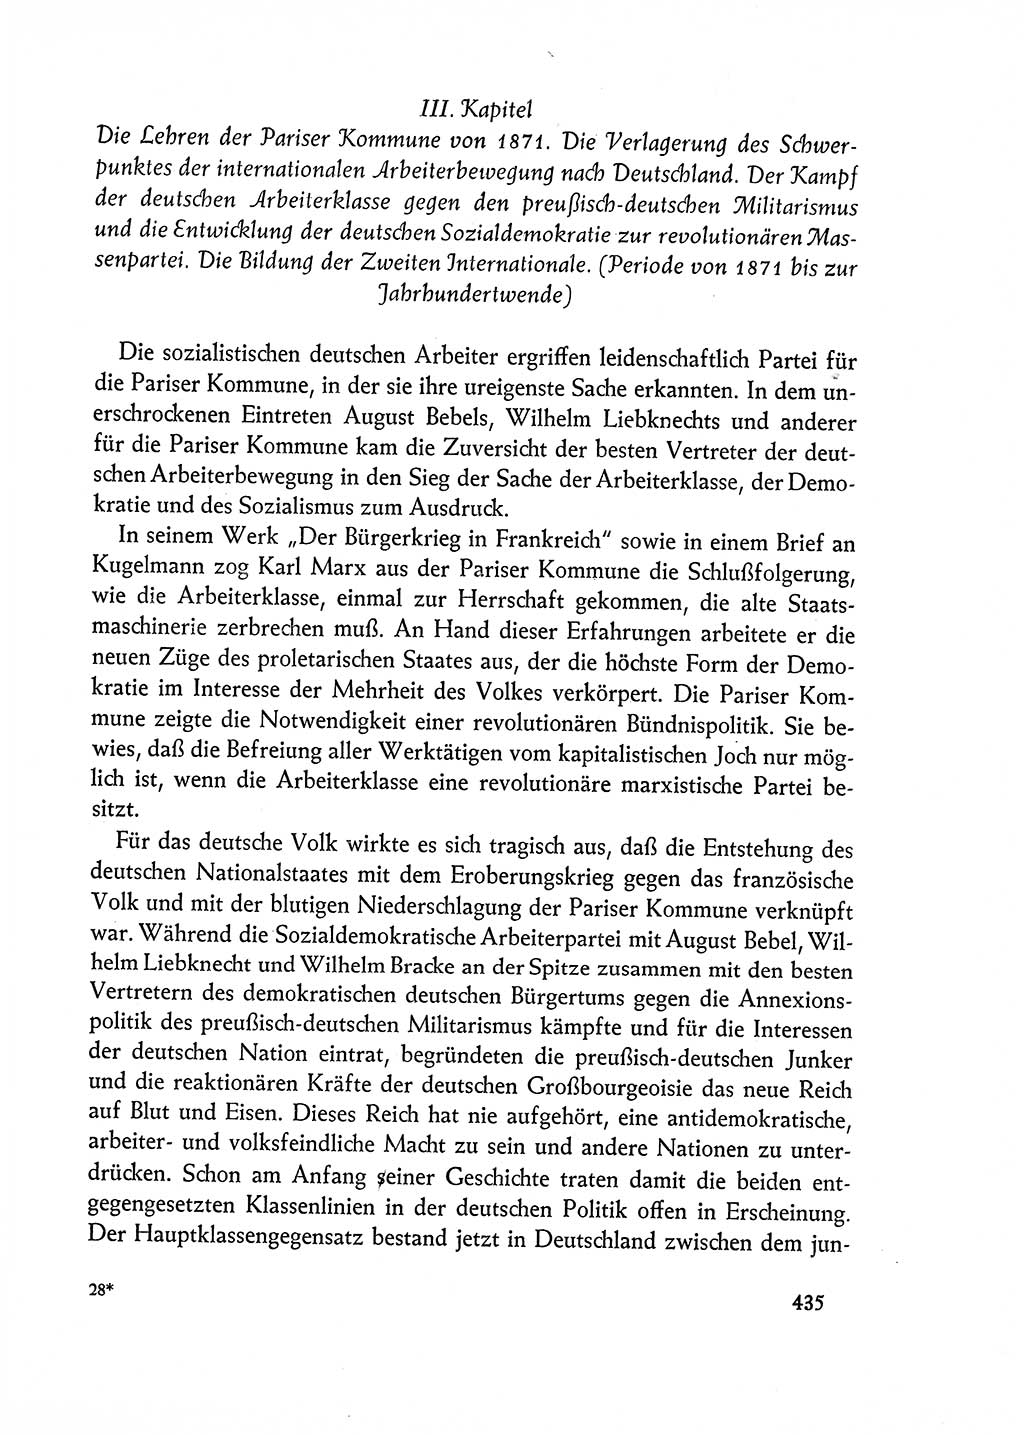 Dokumente der Sozialistischen Einheitspartei Deutschlands (SED) [Deutsche Demokratische Republik (DDR)] 1962-1963, Seite 435 (Dok. SED DDR 1962-1963, S. 435)